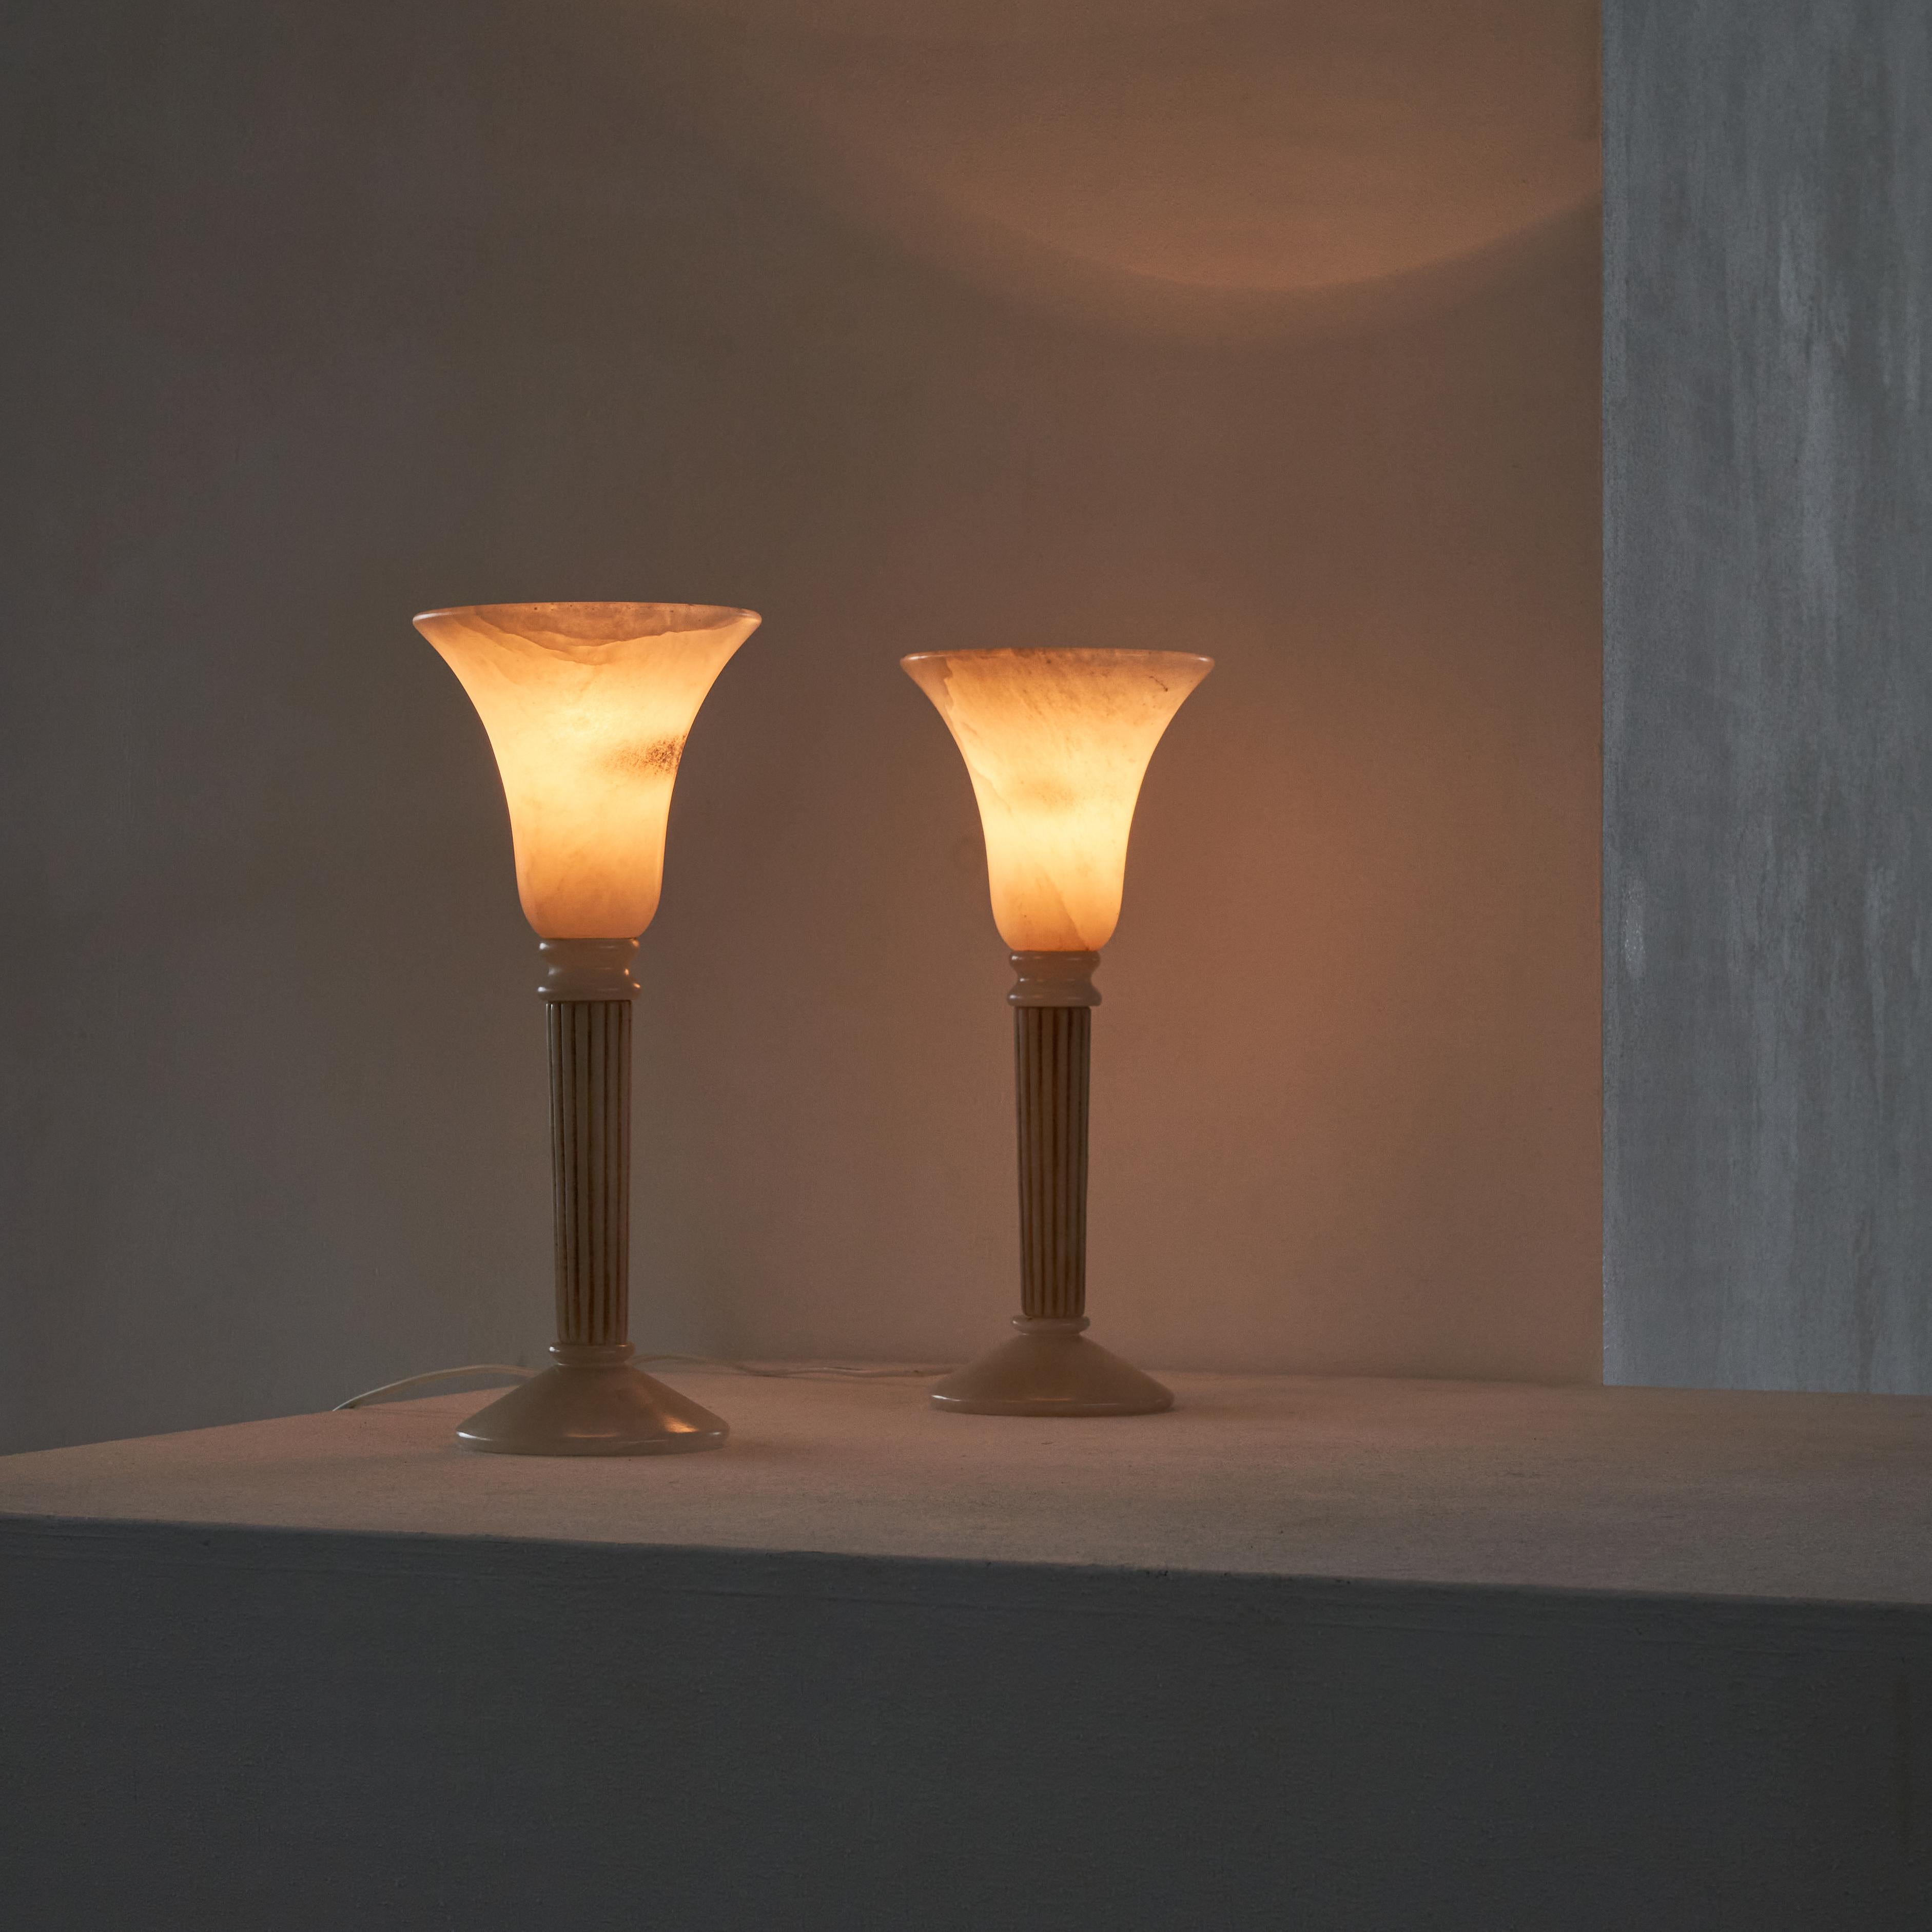 Paire de lampes de table en albâtre.

Merveilleuse paire de lampes de table en albâtre. Forme classique et élégance, combinées à une lumière très douce et chaude lorsqu'elle est allumée. Une paire élégante pour illuminer votre salon, votre chambre